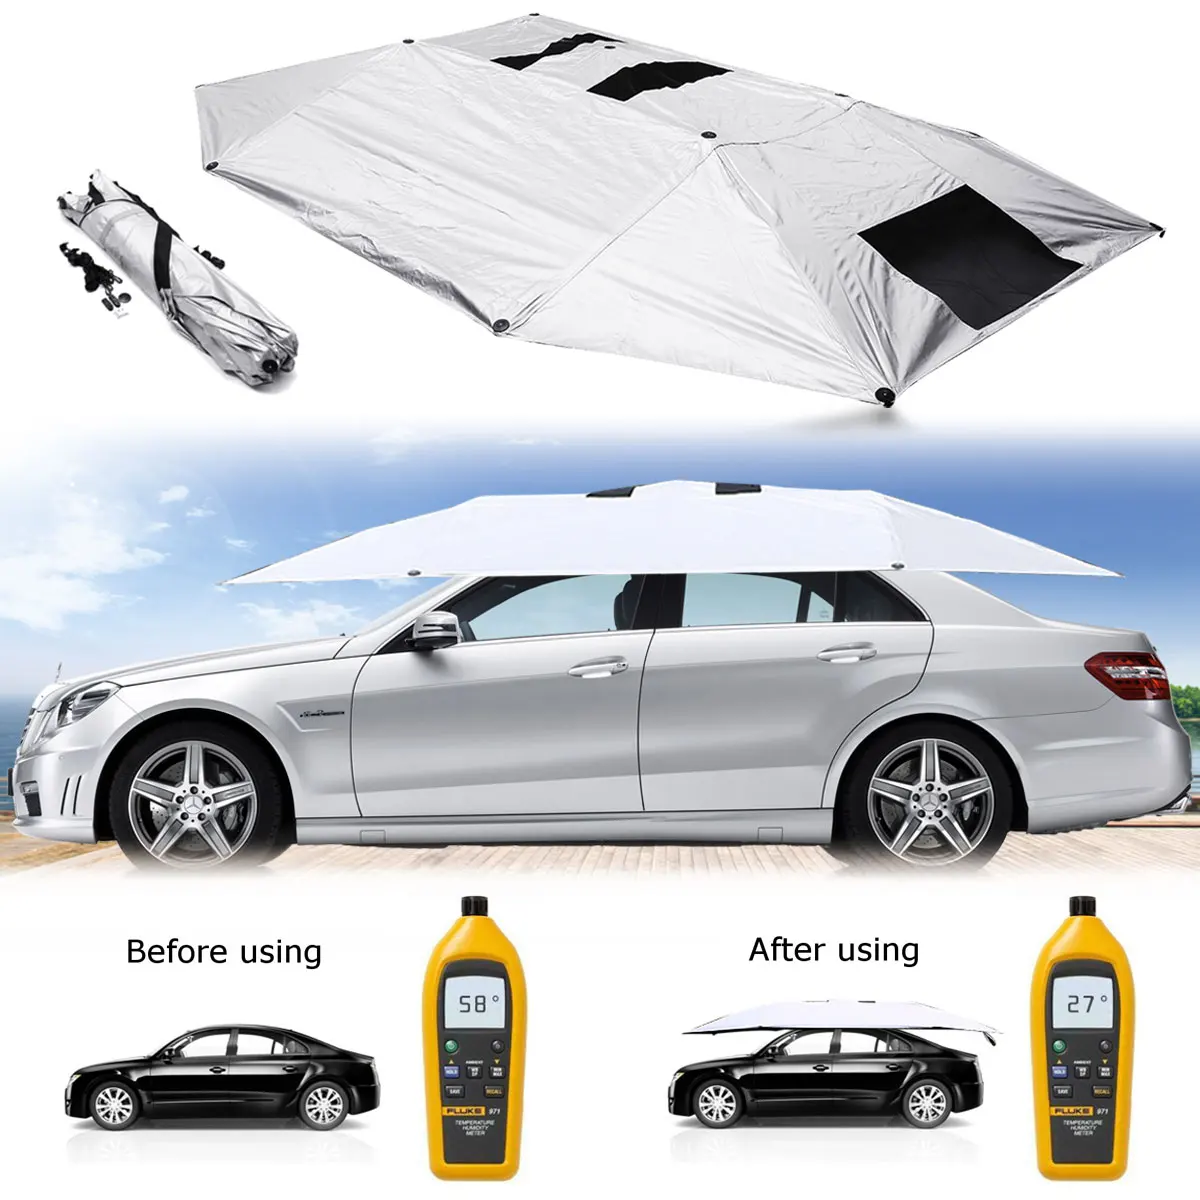 저렴한 휴대용 이동식 야외 자동차 텐트 우산 지붕 차양 커버, UV 보호, 자동차 태양 그늘, 자동차 액세서리, 호일, 태양 보호